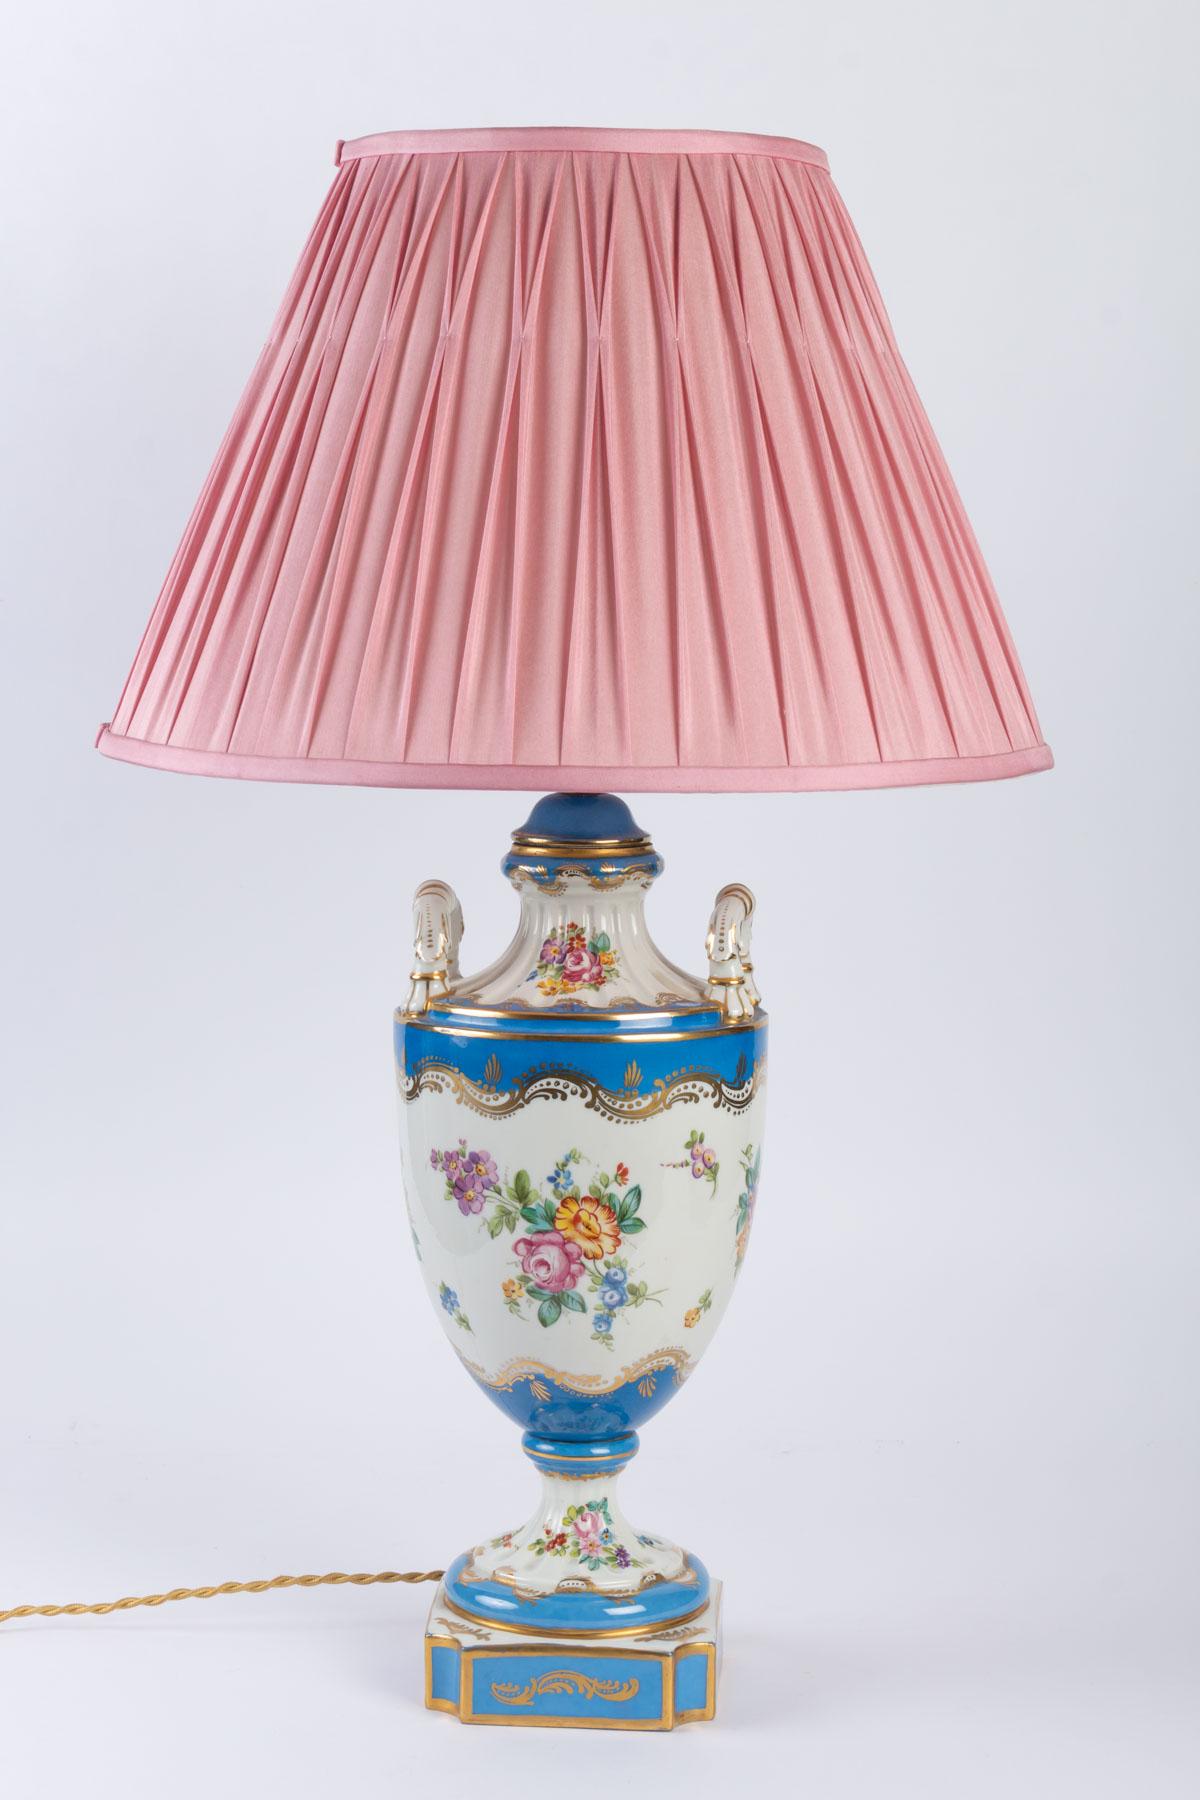 Lamp in Sèvres Porcelain, 19th century Louis XV style.
Measures: H 67 cm, D 41 cm.